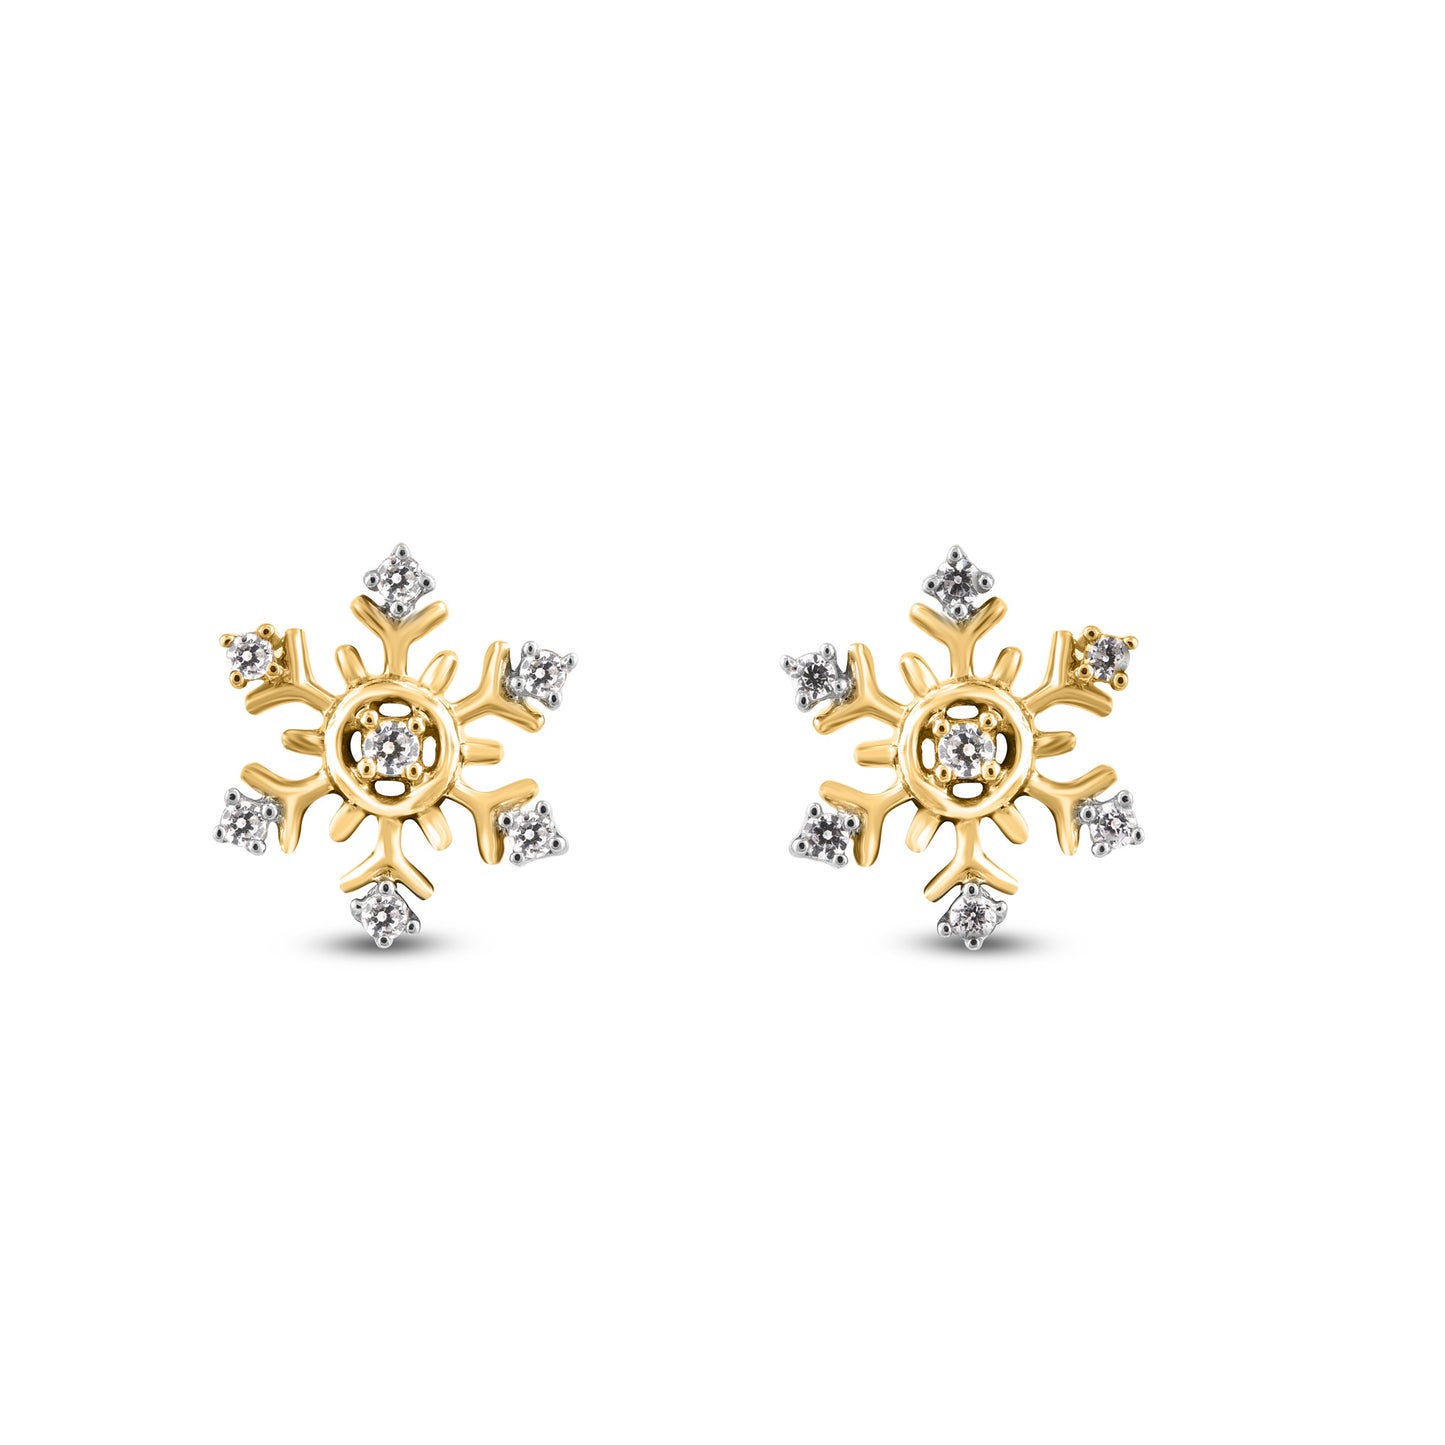 Snowflake Stud Earrings in .925 Sterling Silver